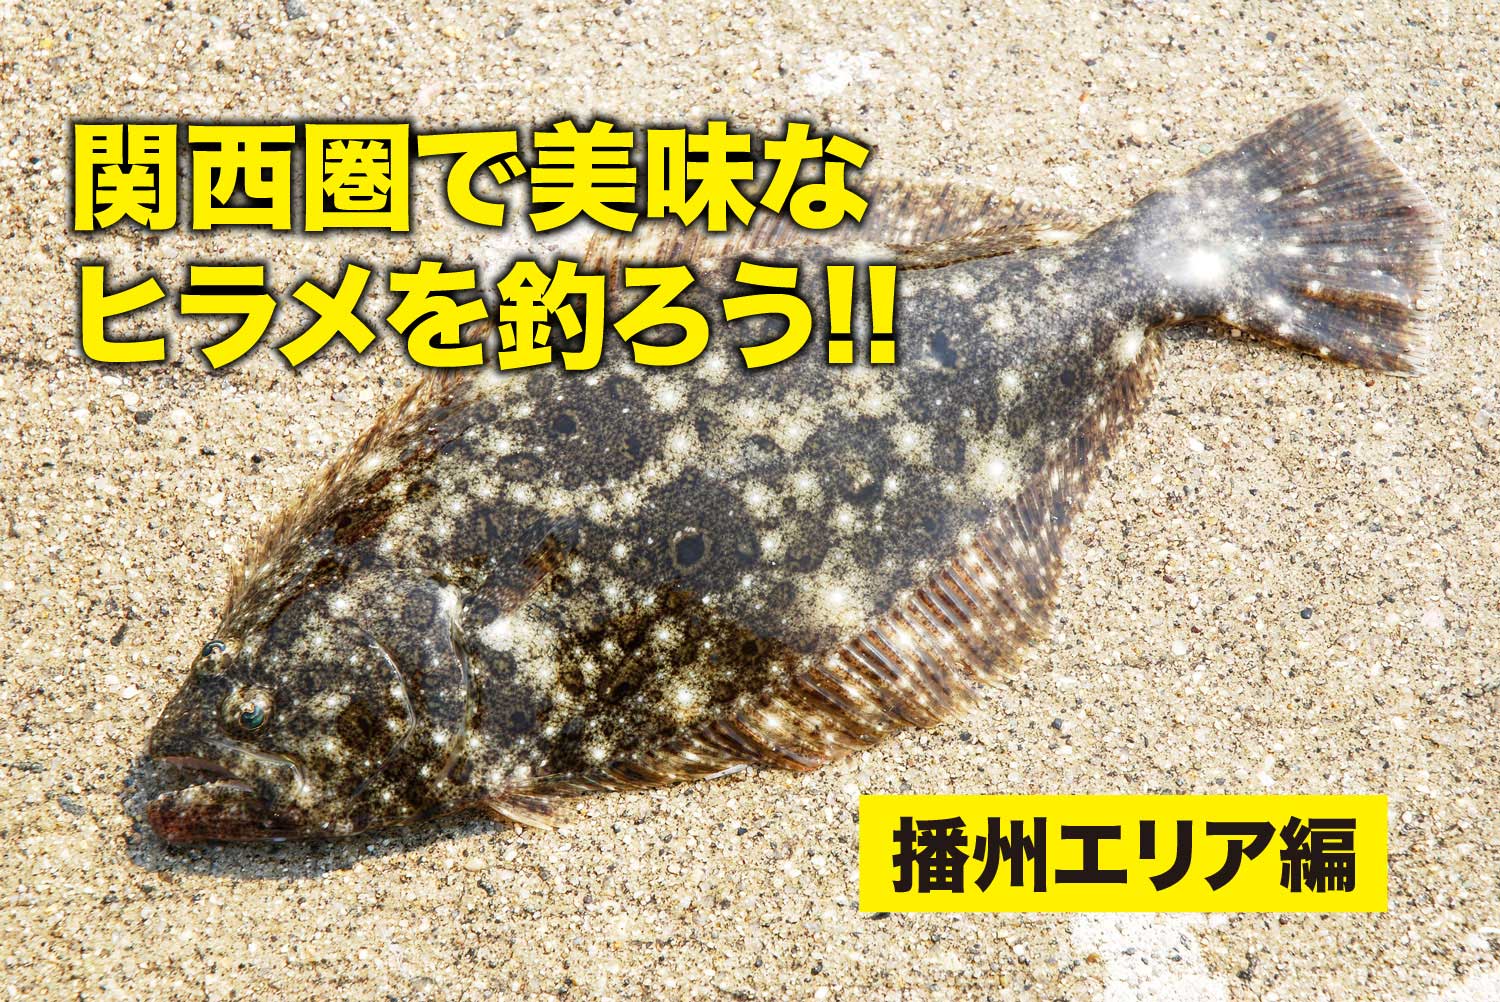 関西圏で美味なヒラメを釣ろう 播州エリア編 Swマガジンweb 海のルアーマンのための総合情報メディア